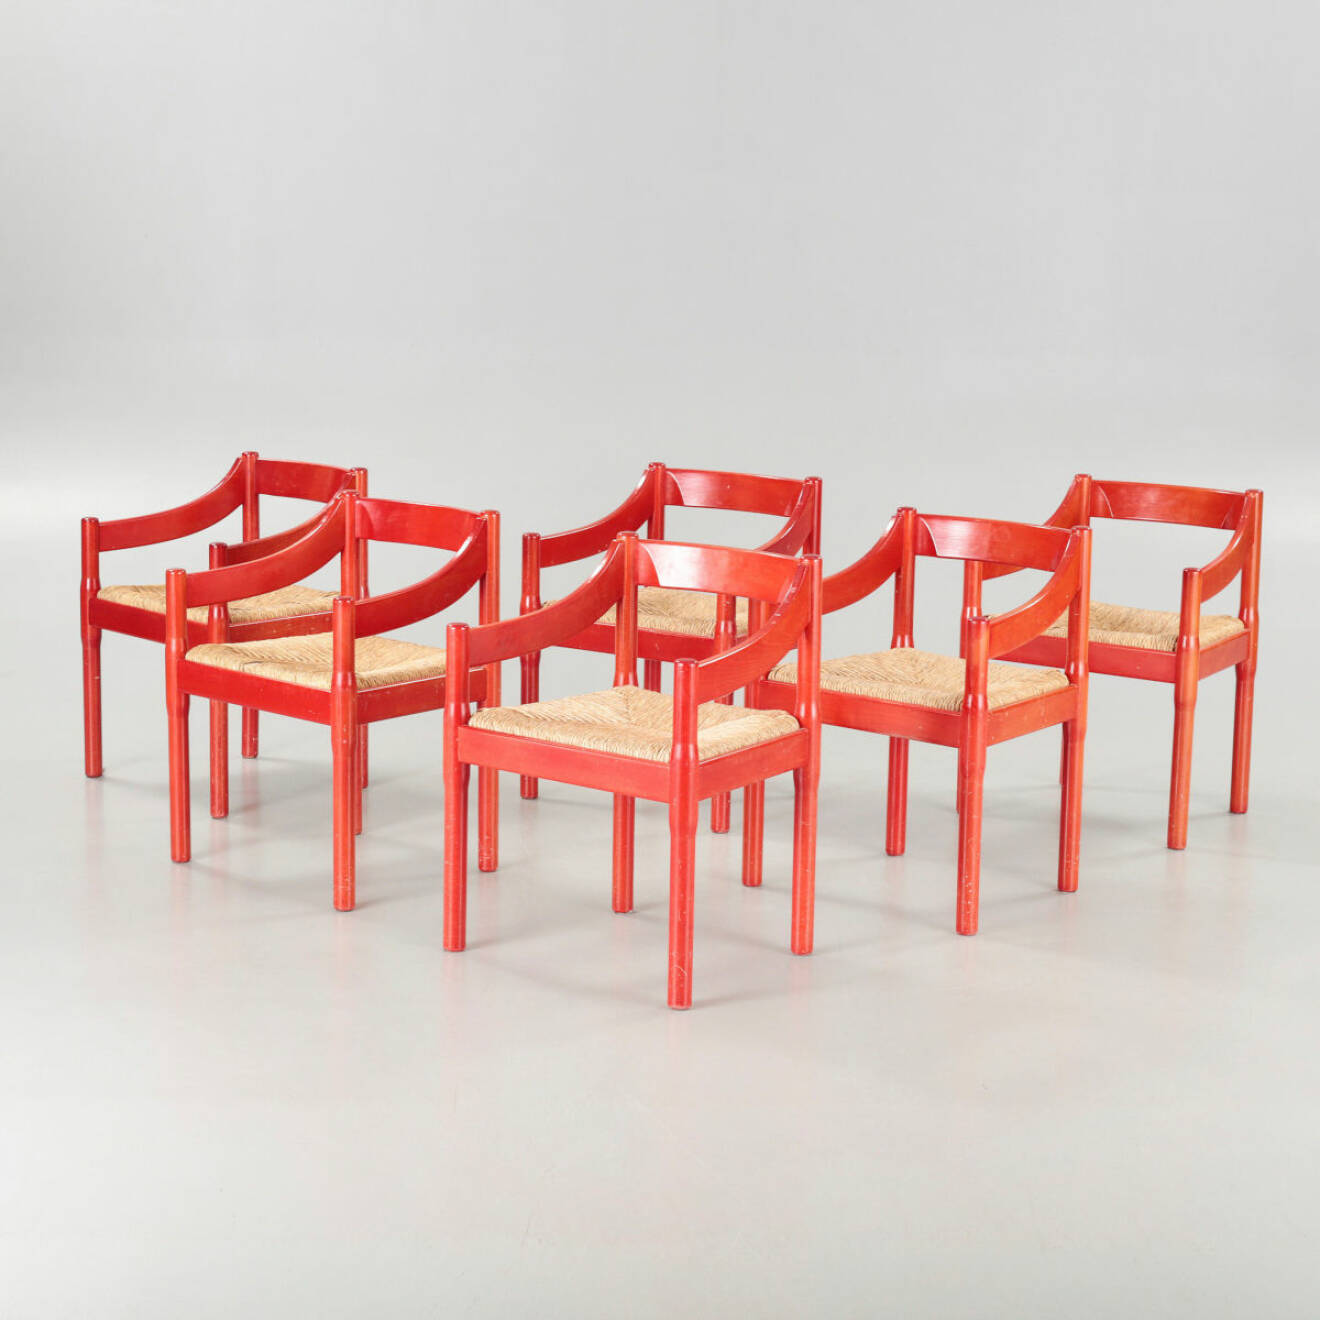 Röda stolar vid namn Carimate av Vico Magistretti för Cassina